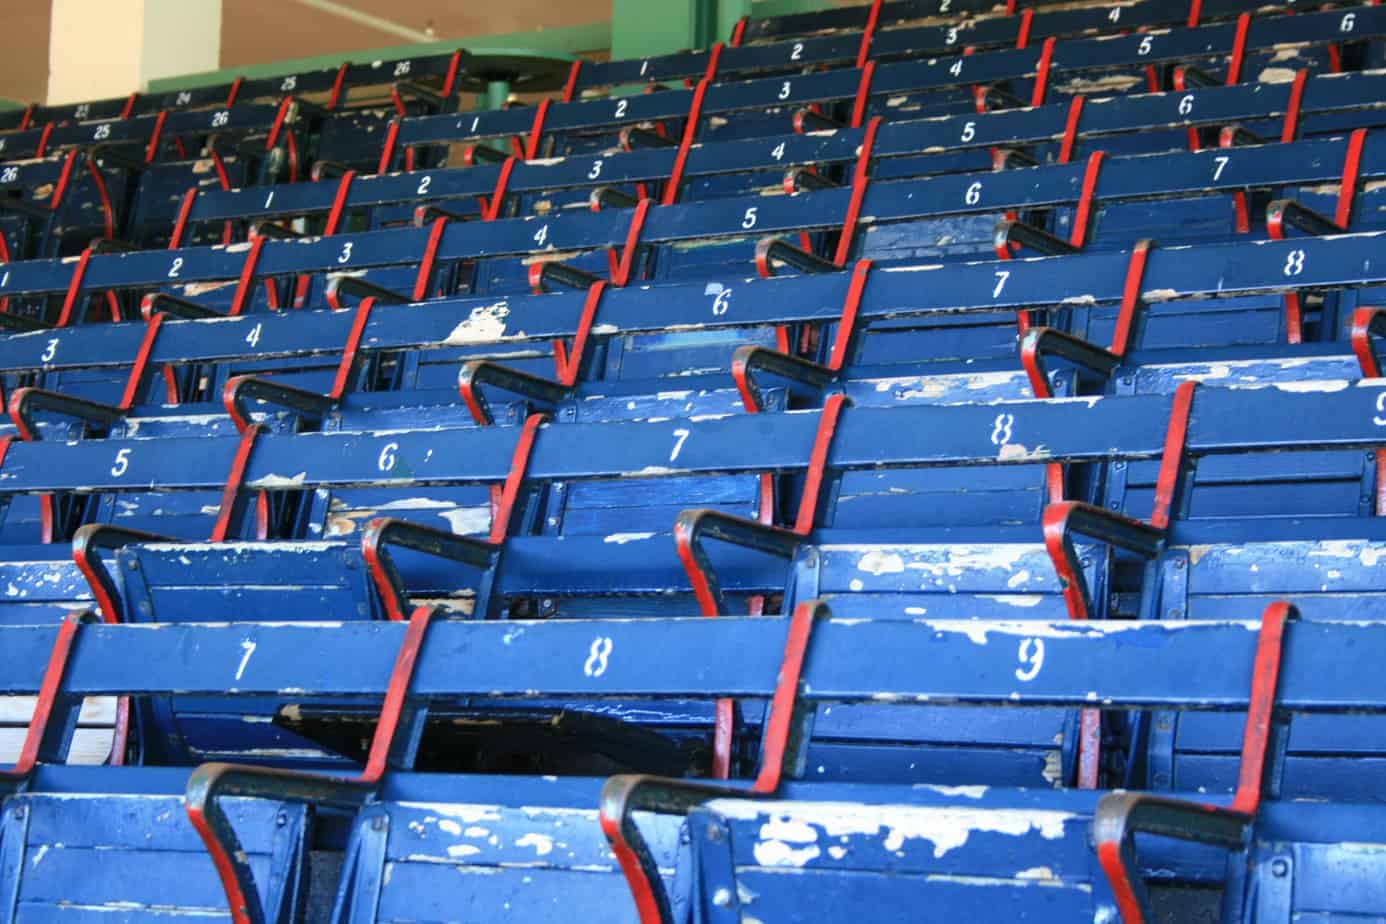 Seats at Fenway Park